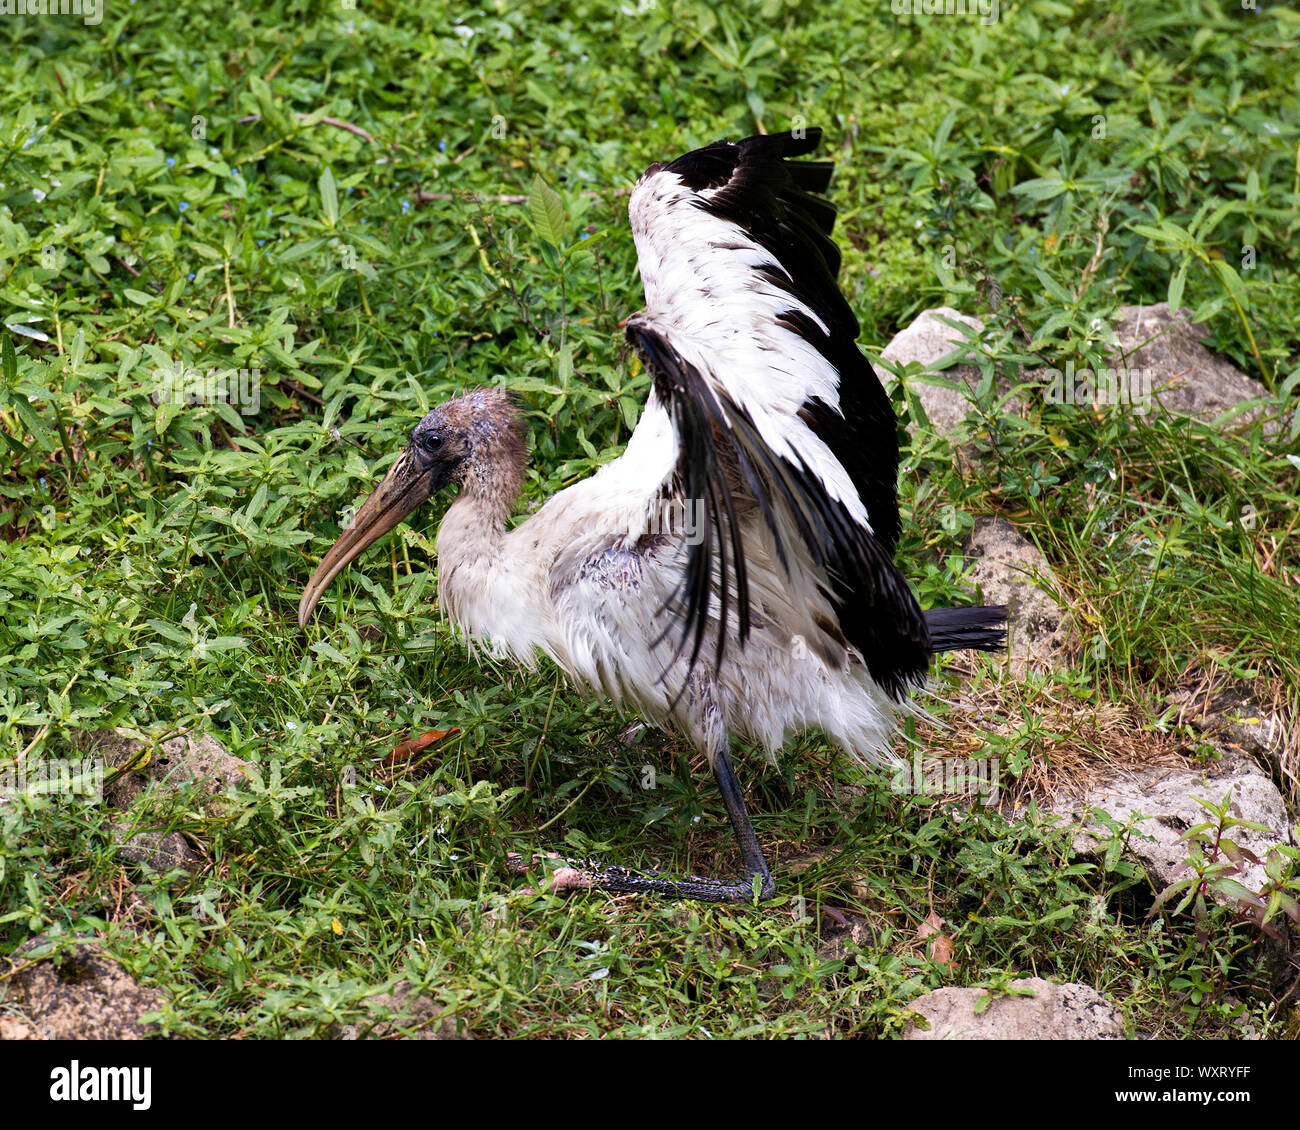 Holz Stork unreifen Vogel mit ausgebreiteten Flügeln auf dem Boden mit grünem Gras in seiner Umgebung und Umwelt. Stockfoto